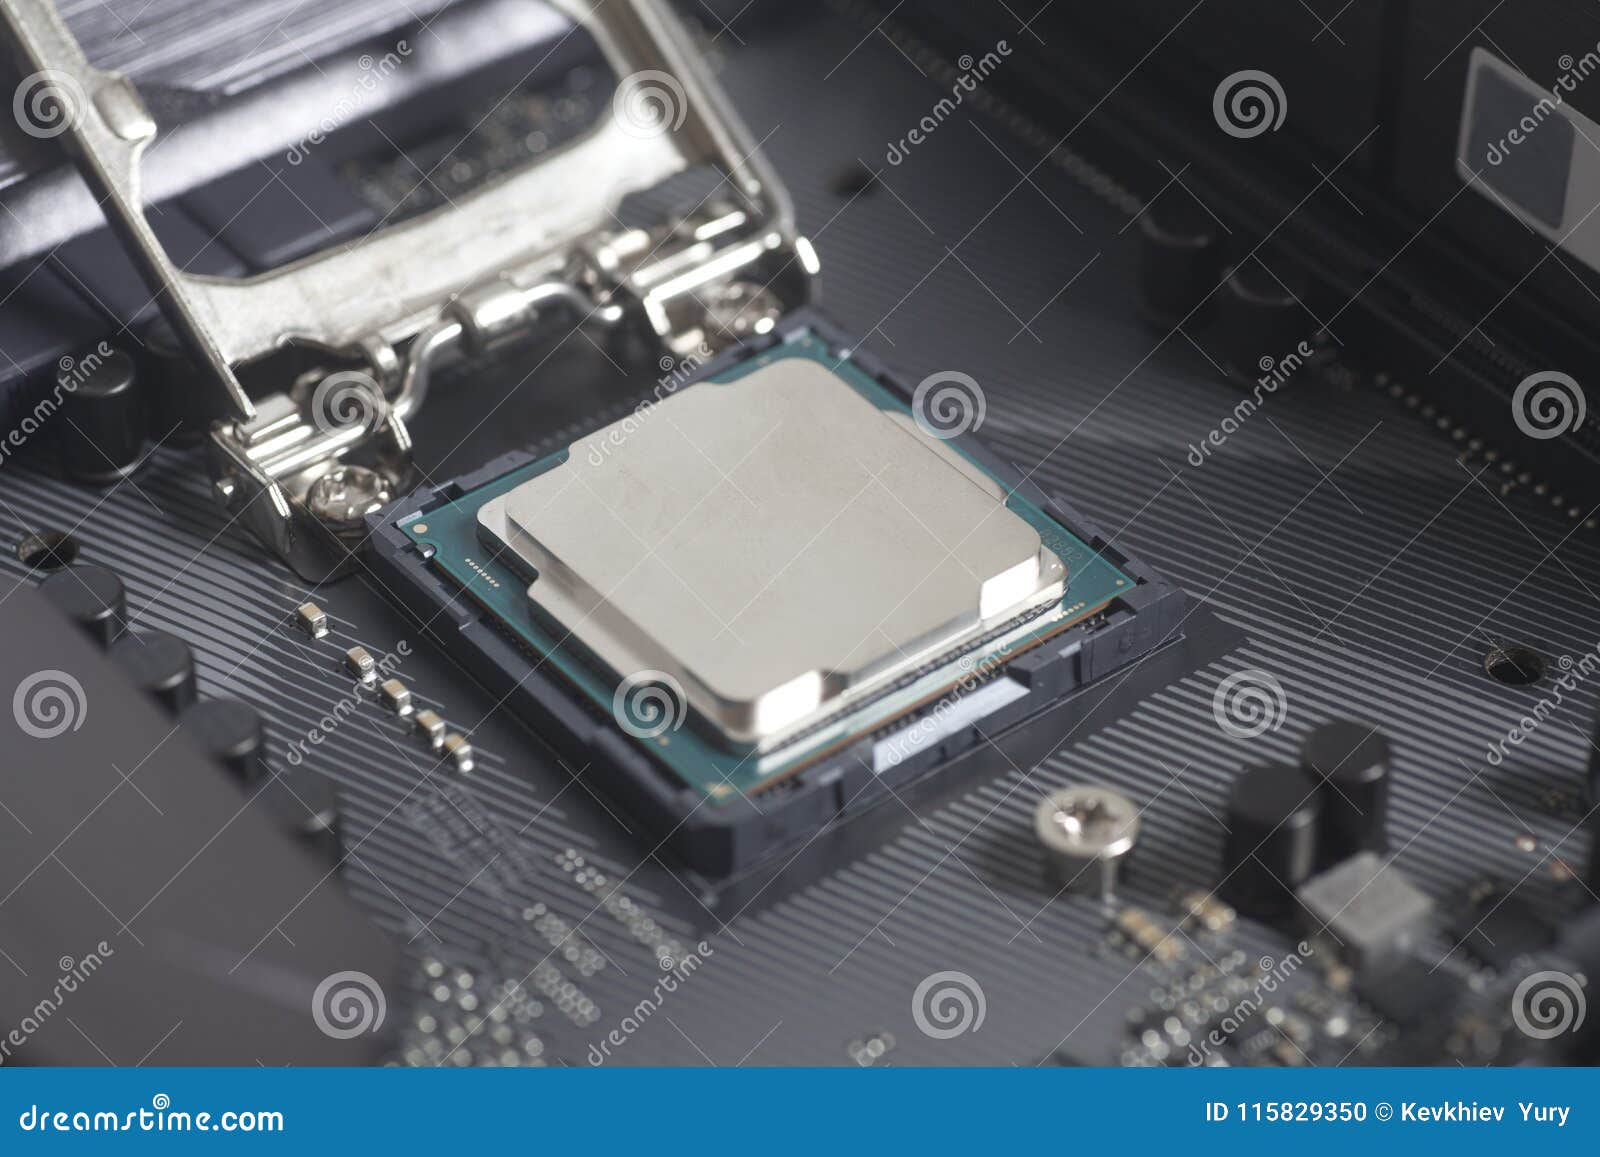 CPU et processeurs LGA 1151 Intel